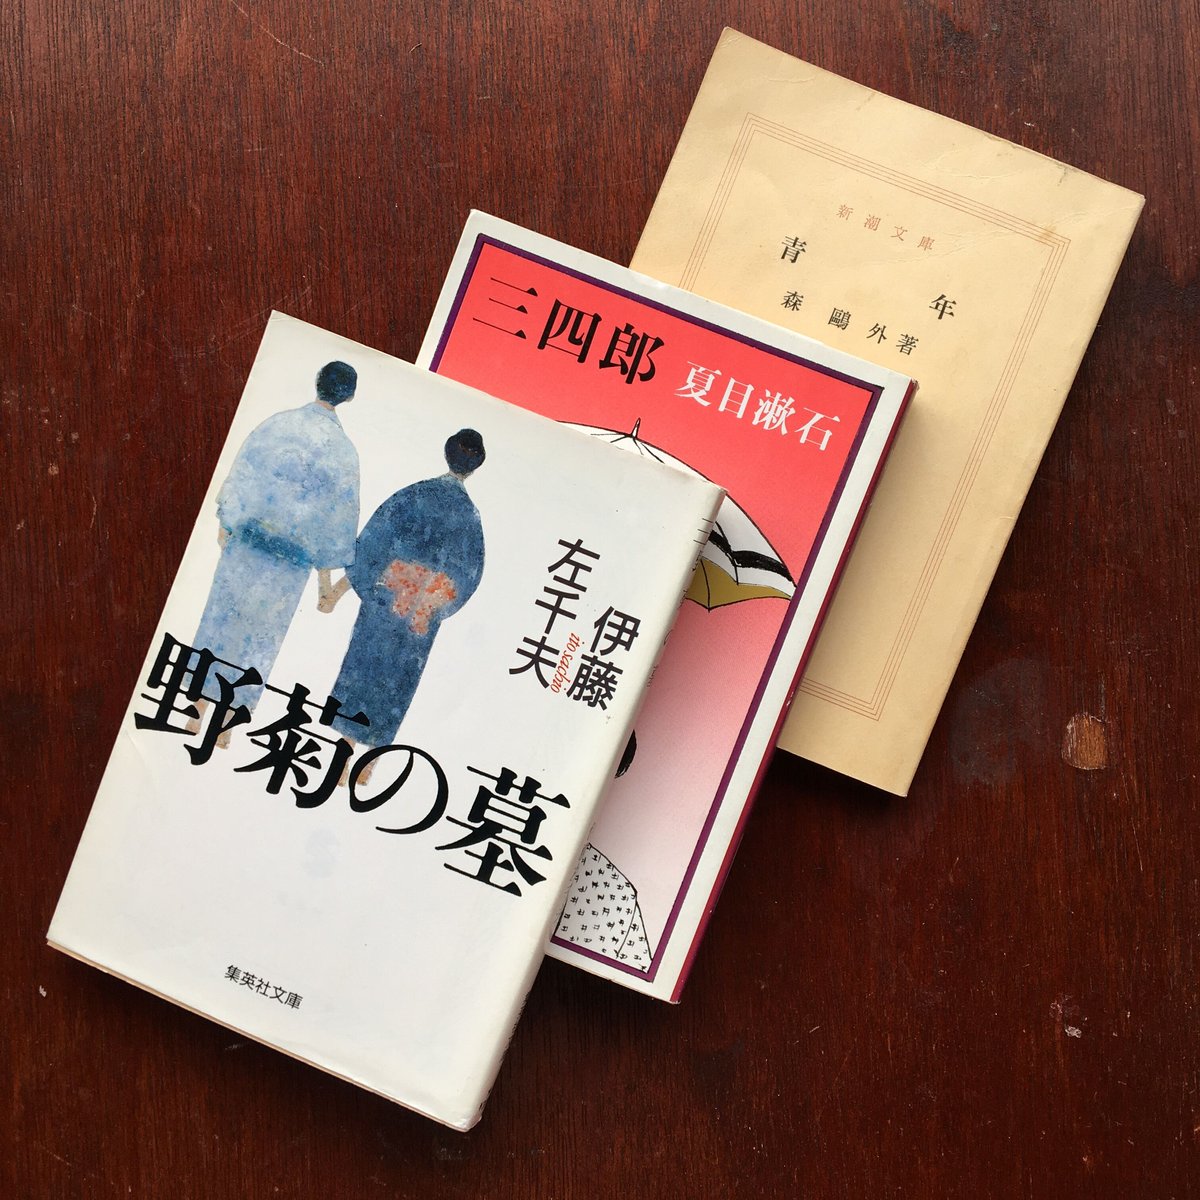 国文學 2冊セット 夏目漱石 作品に深く測鉛をおろして・三島由紀夫の遺